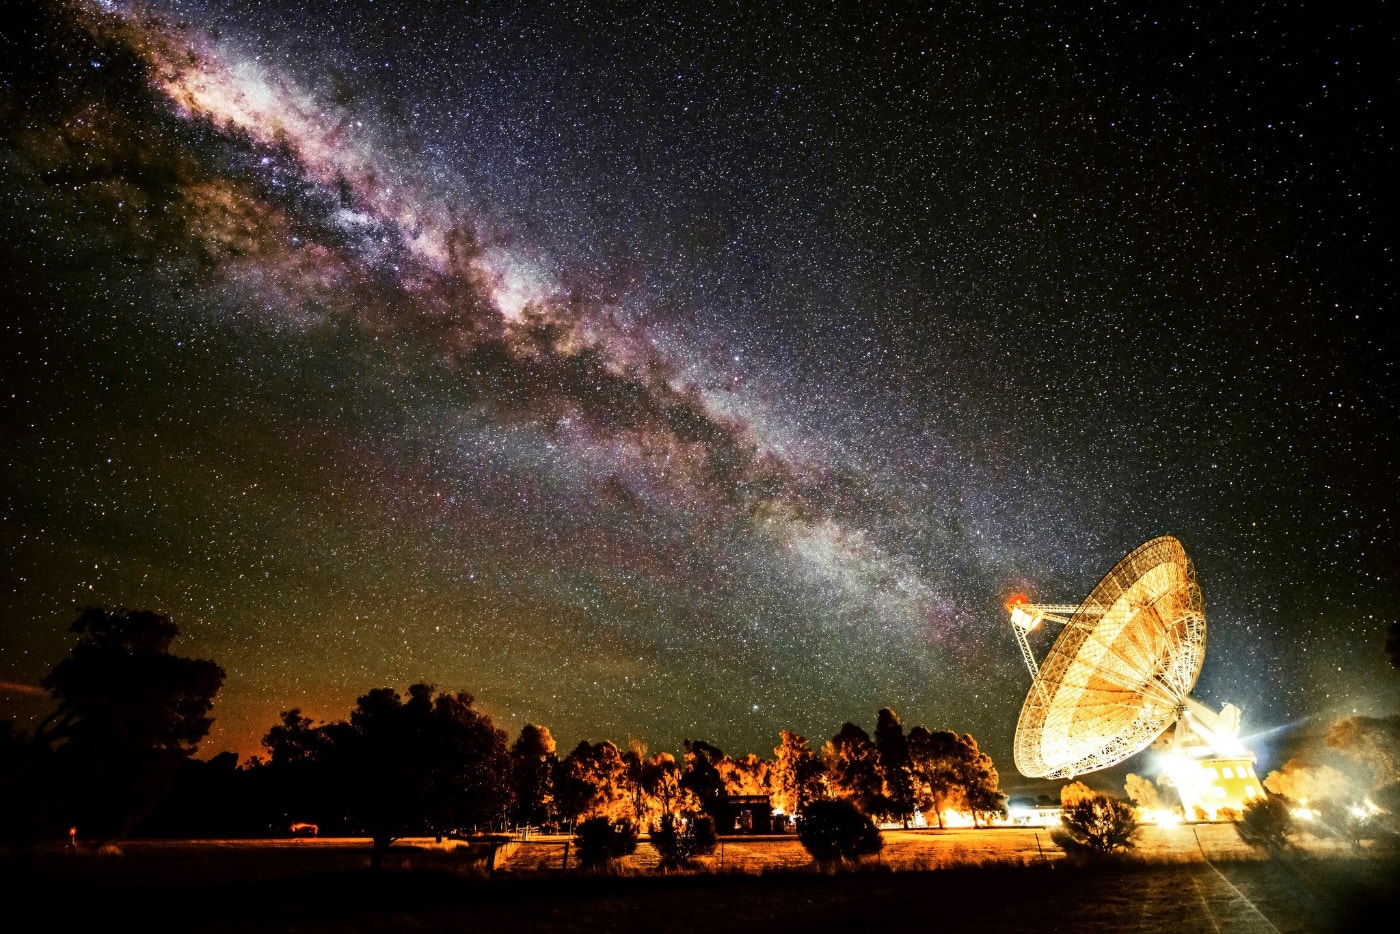 El radiotelescopio australiano de CSIRO Parkes, dedicado a la búsqueda de vida extraterrestre. Foto: Wayne England.